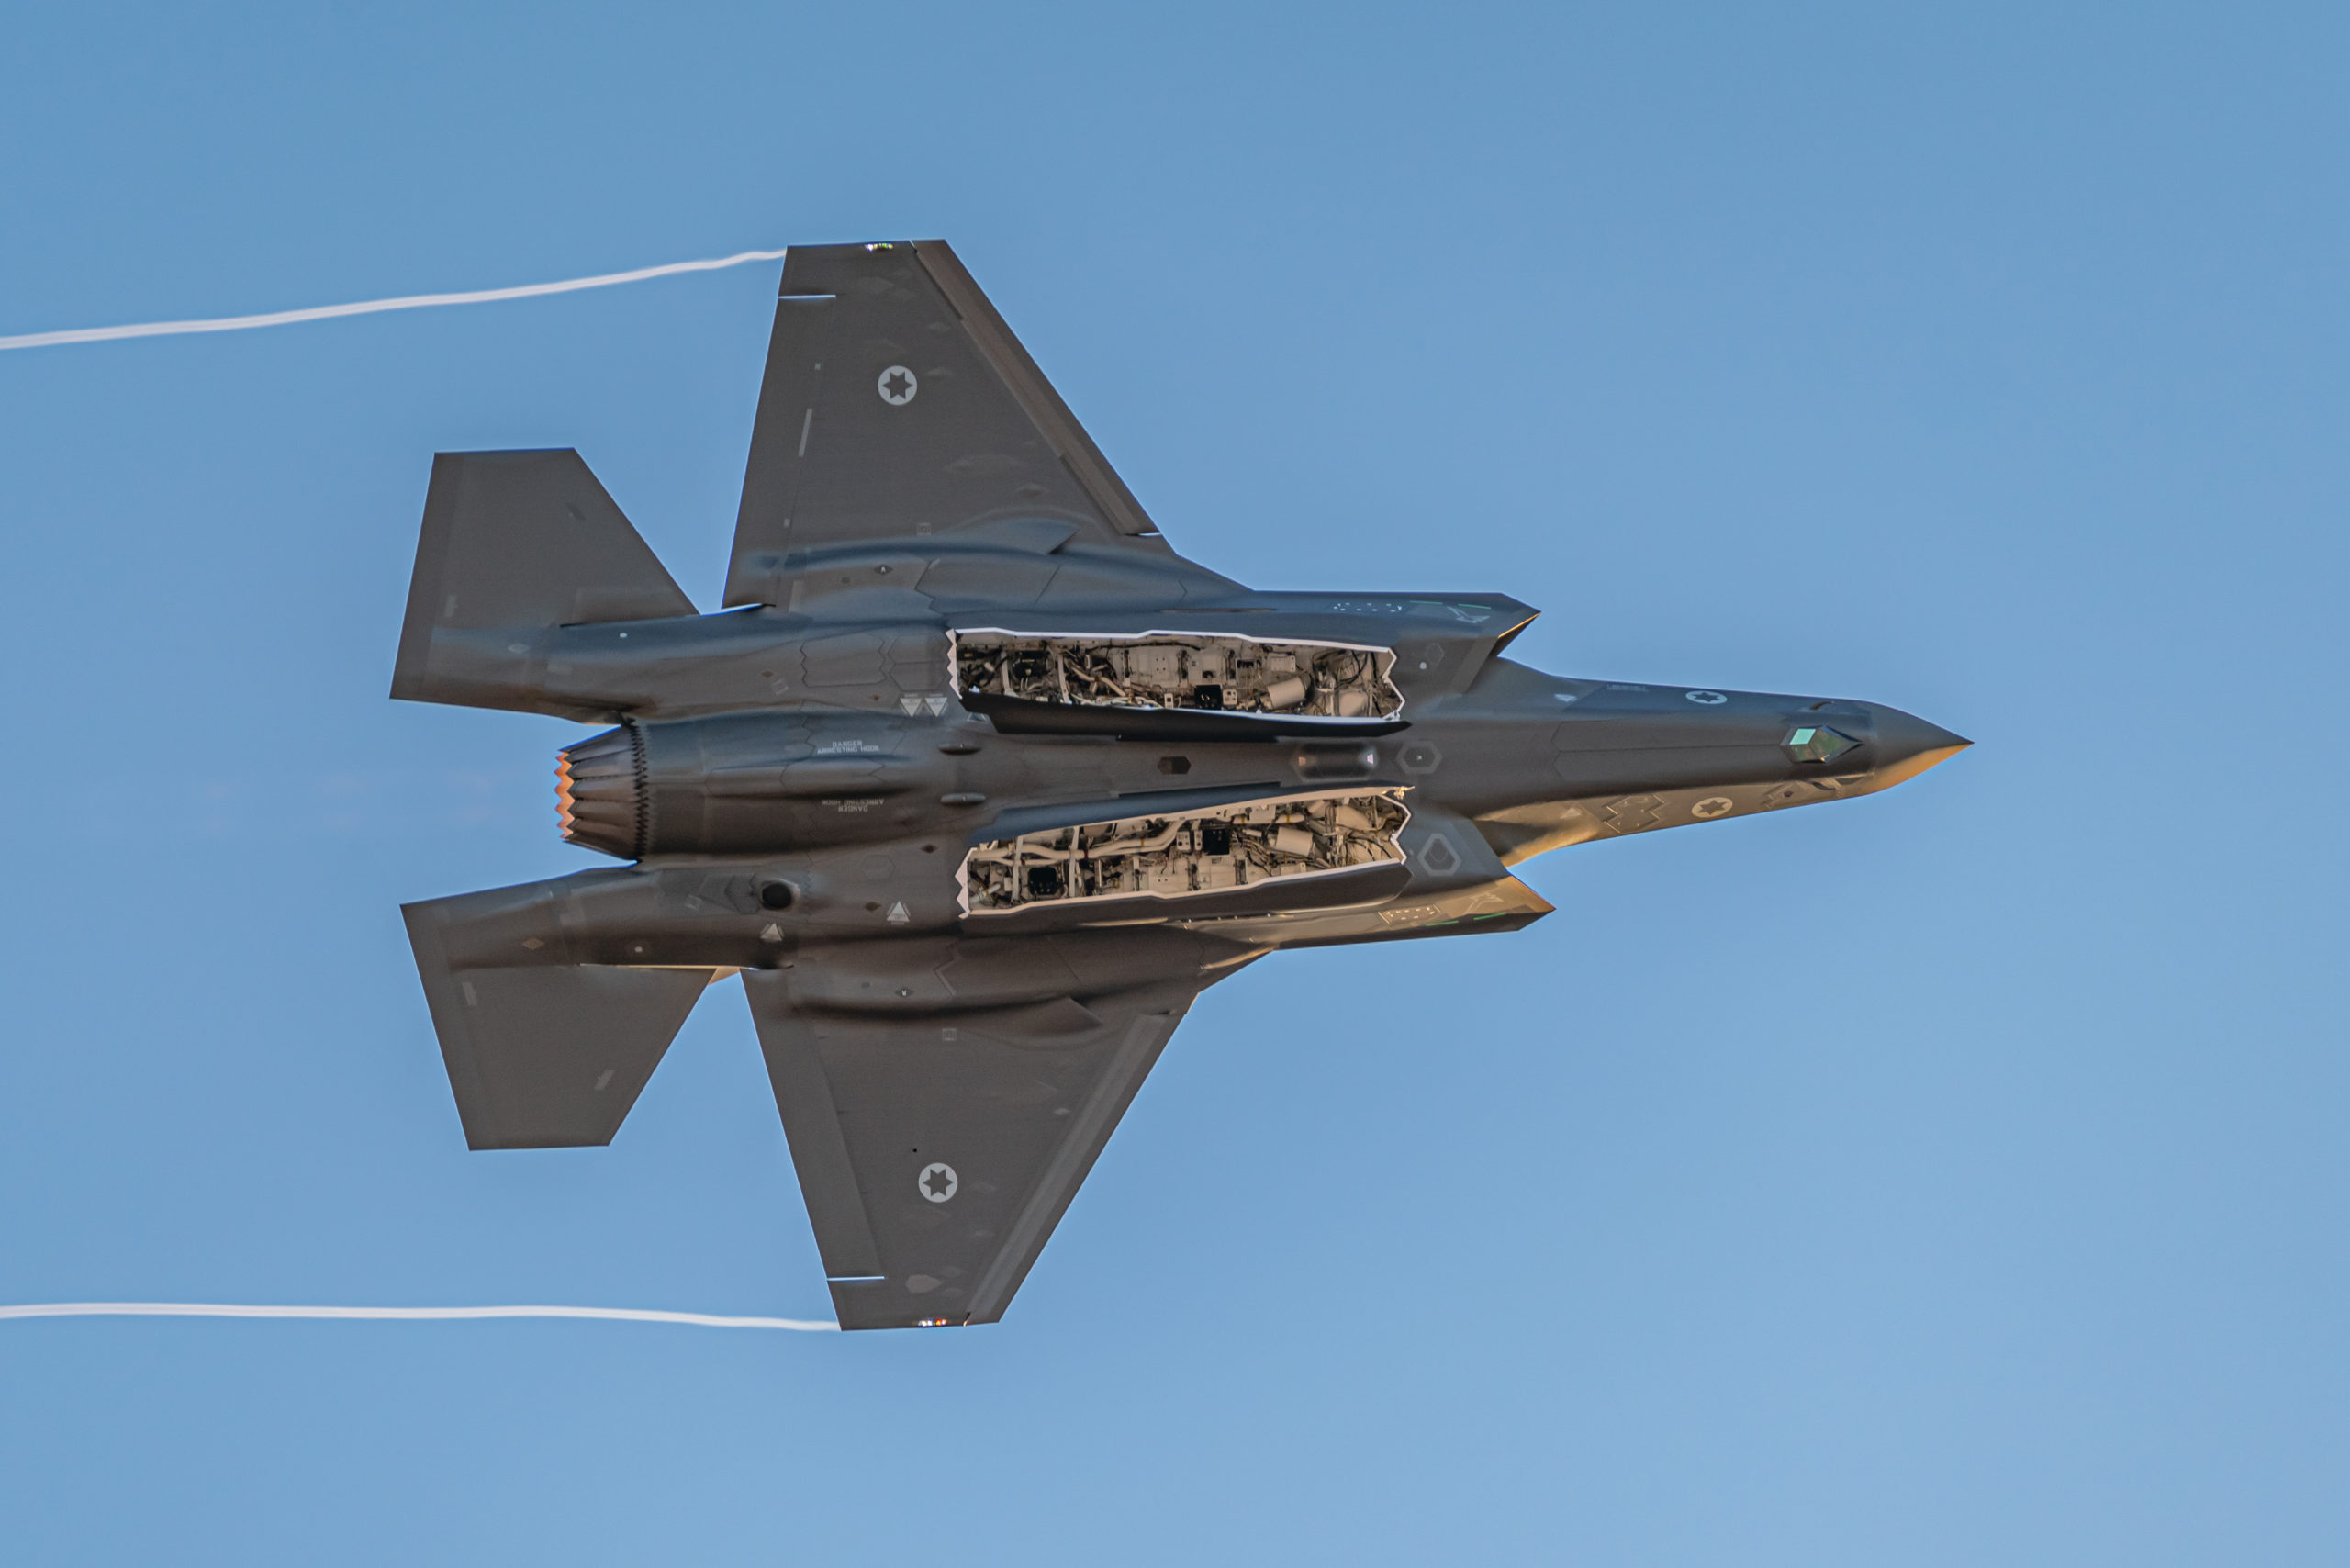 אם לא היה סיוע אמריקני, האם היתה ישראל מוציאה את הכסף מהכיס ומצטיידת במטוסי ה-F-35?